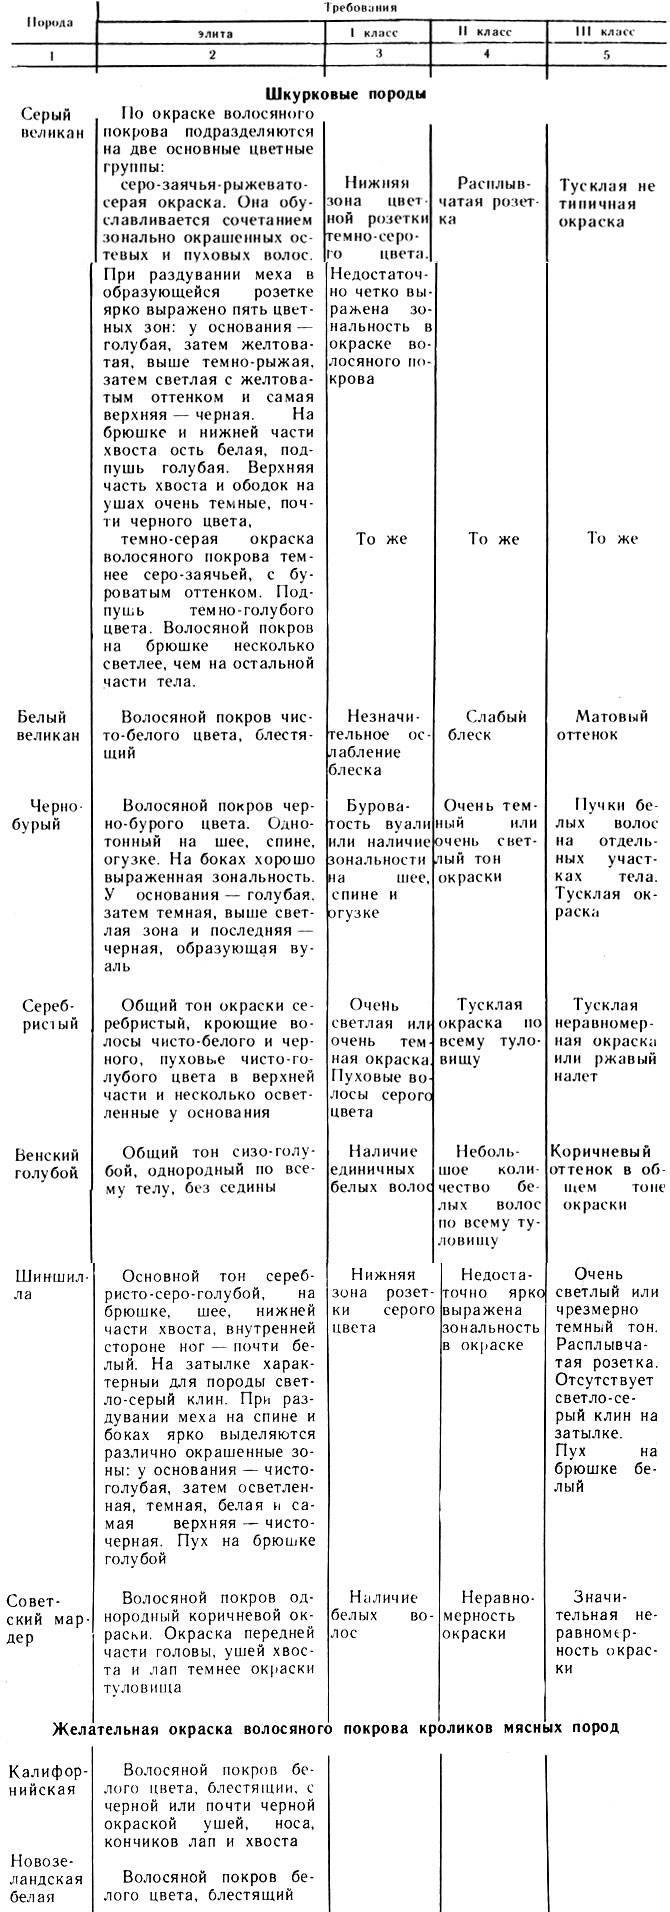 Таблица 6. Оценка кроликов разных пород по окраске волосяного покрова